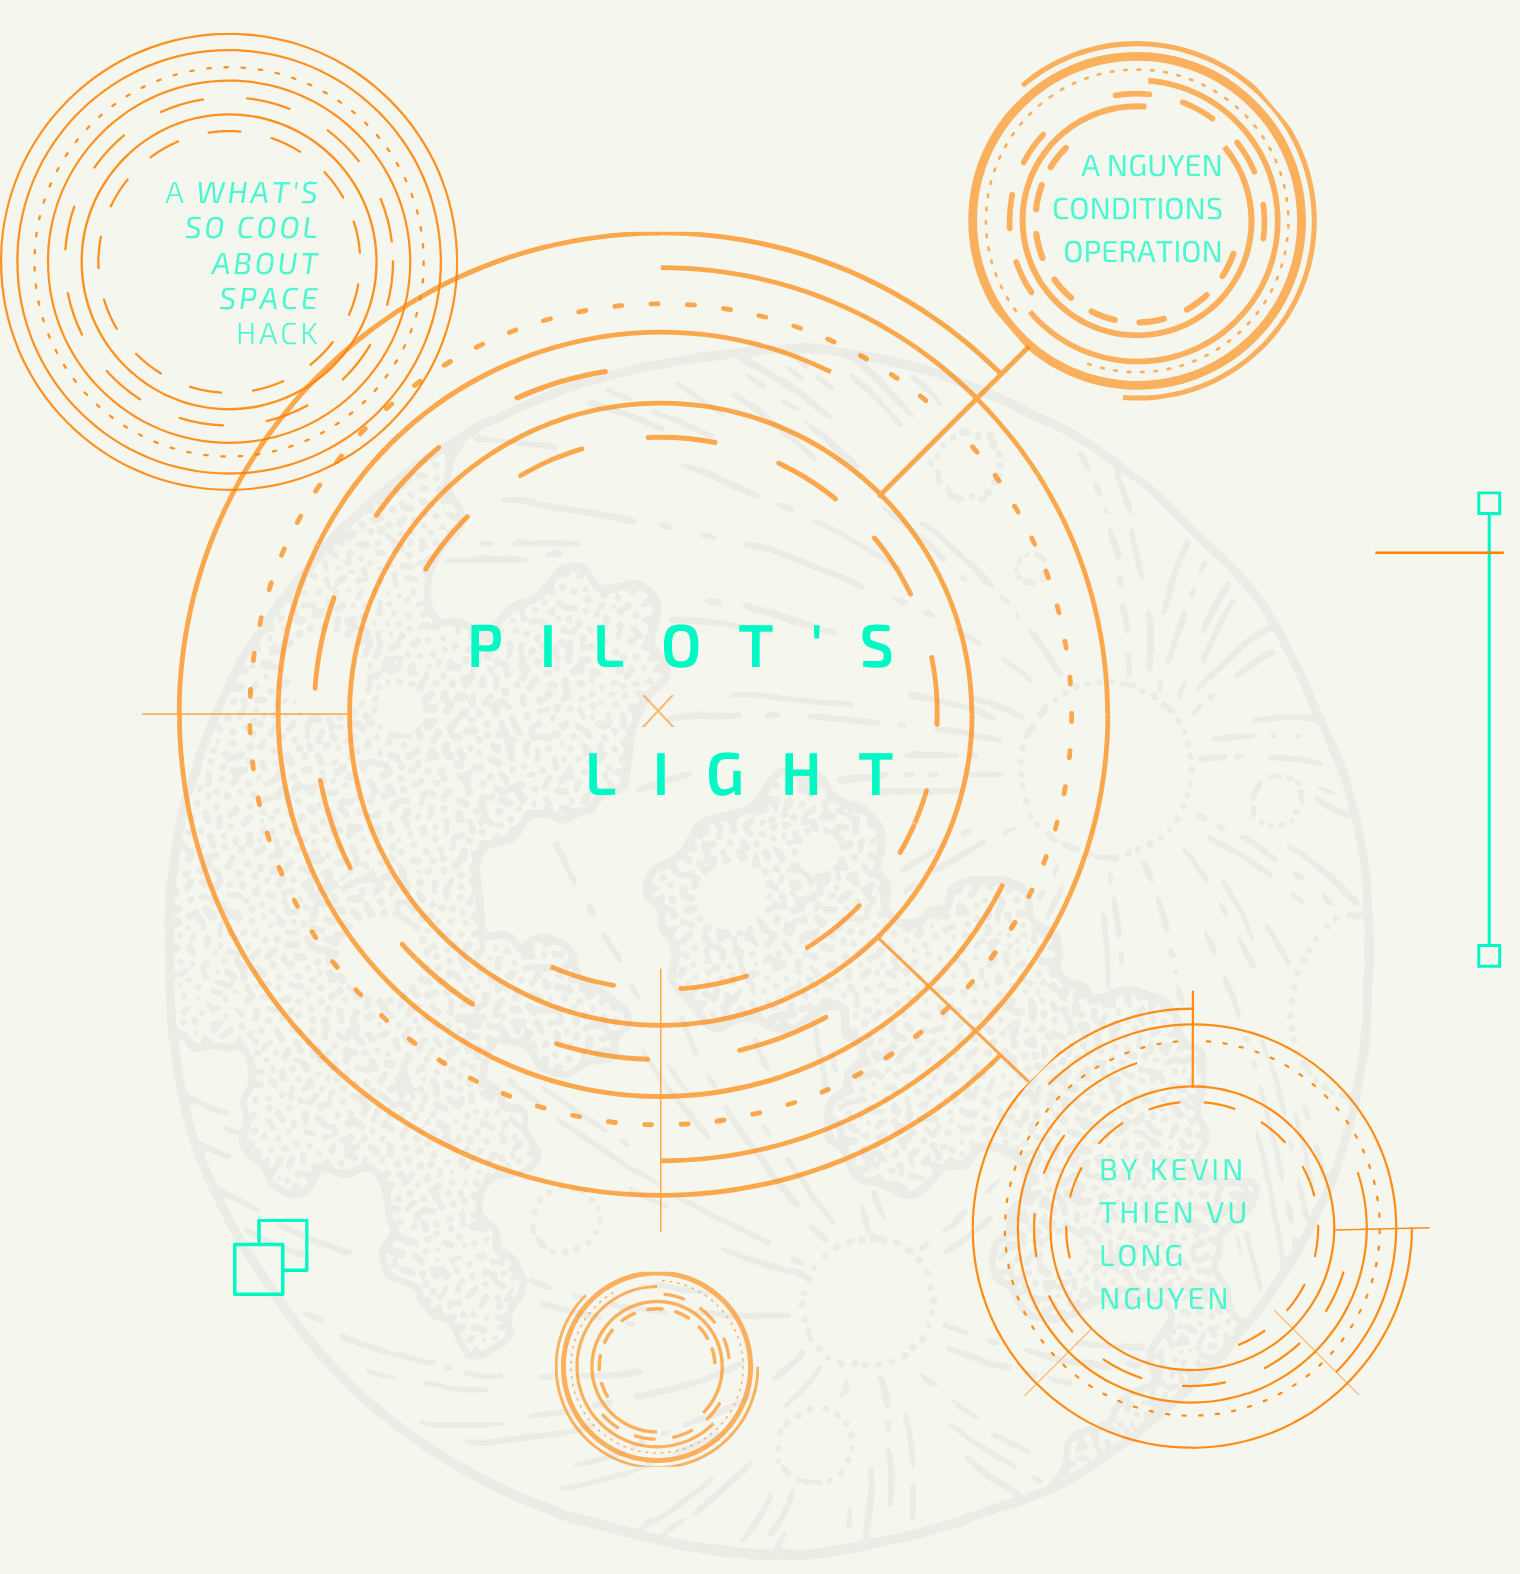 PILOT'S LIGHT